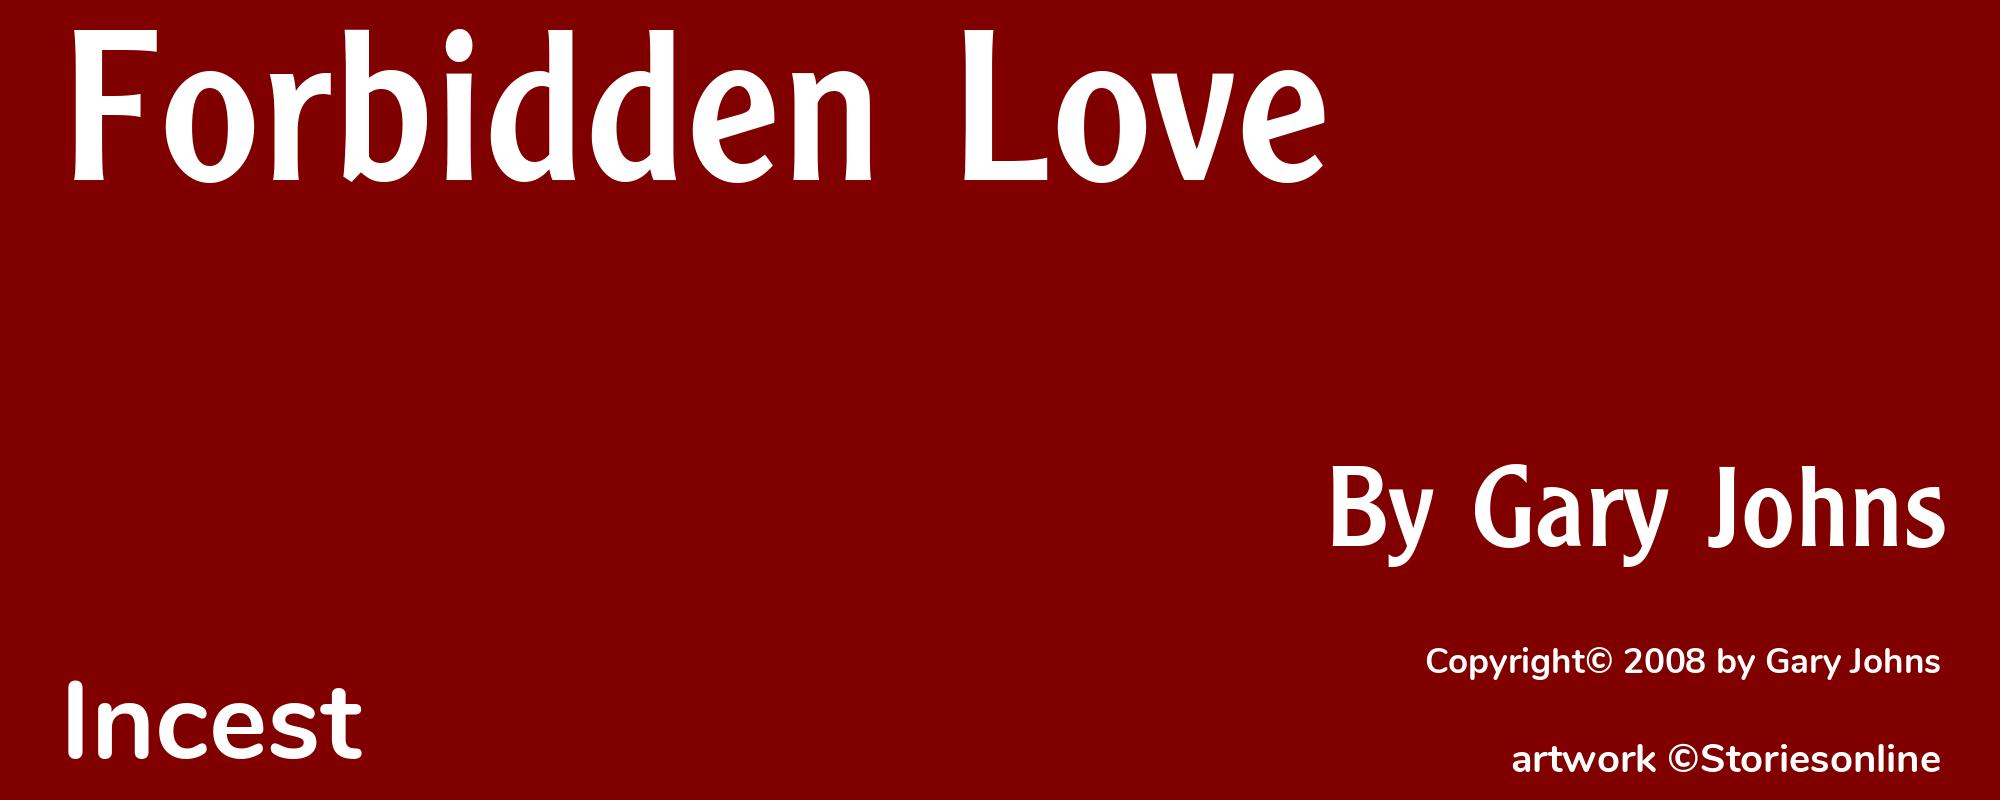 Forbidden Love - Cover